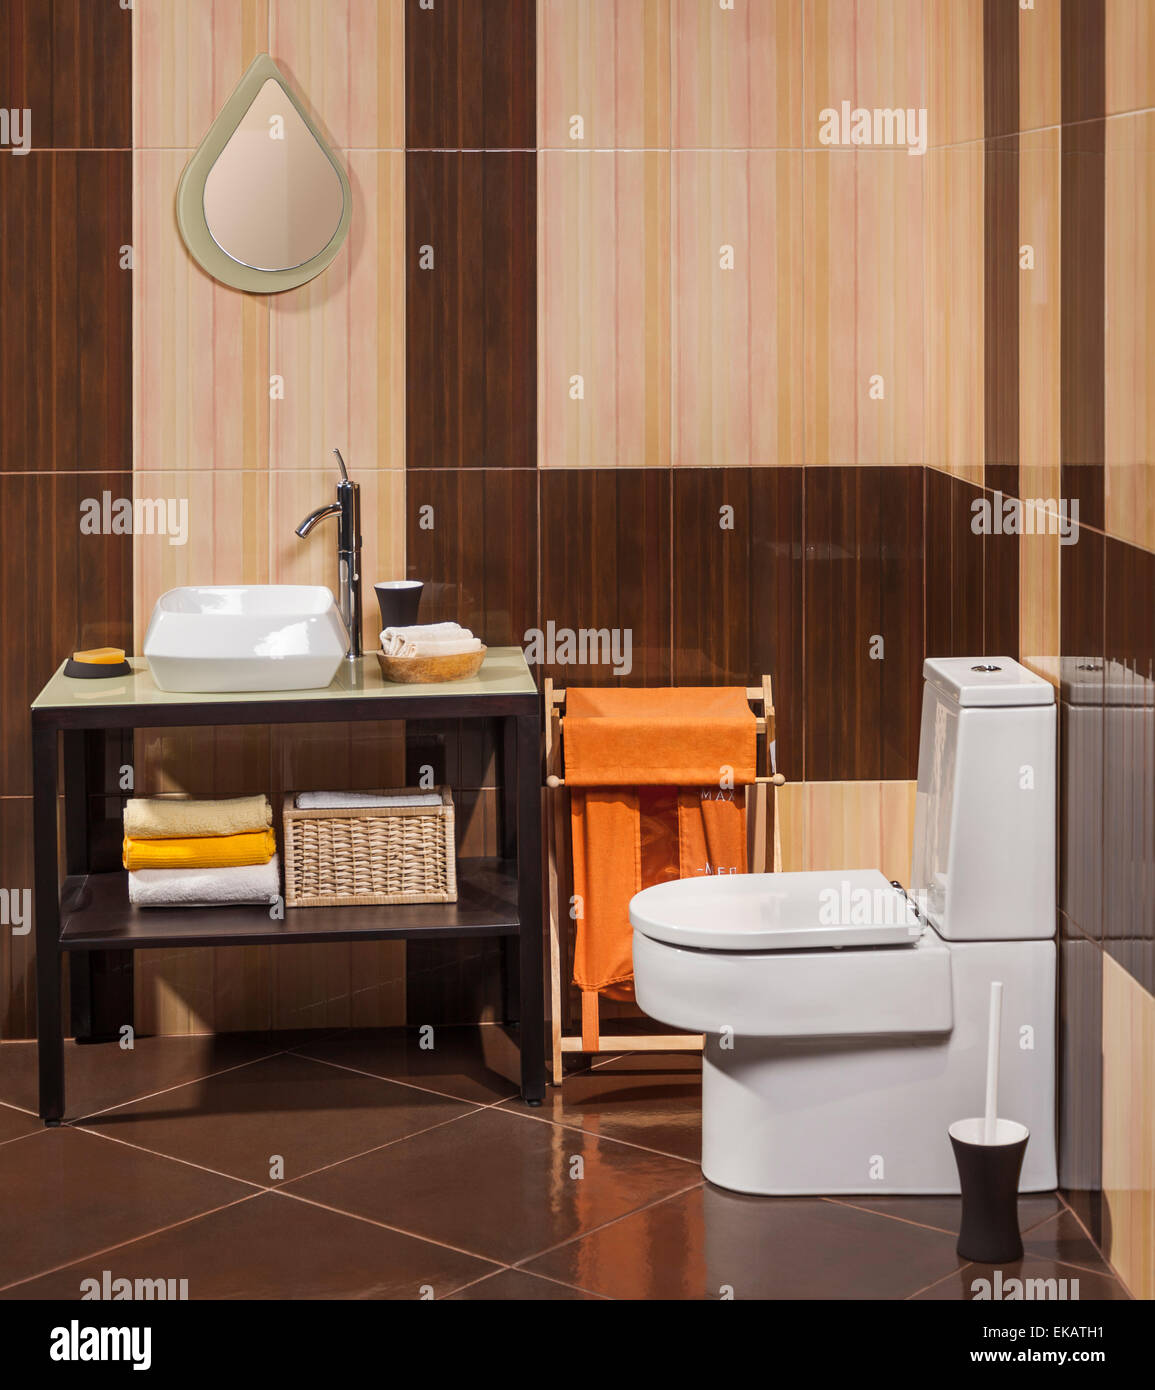 Détail d'une salle de bains moderne avec lavabo, toilette et panier de blanchisserie Banque D'Images